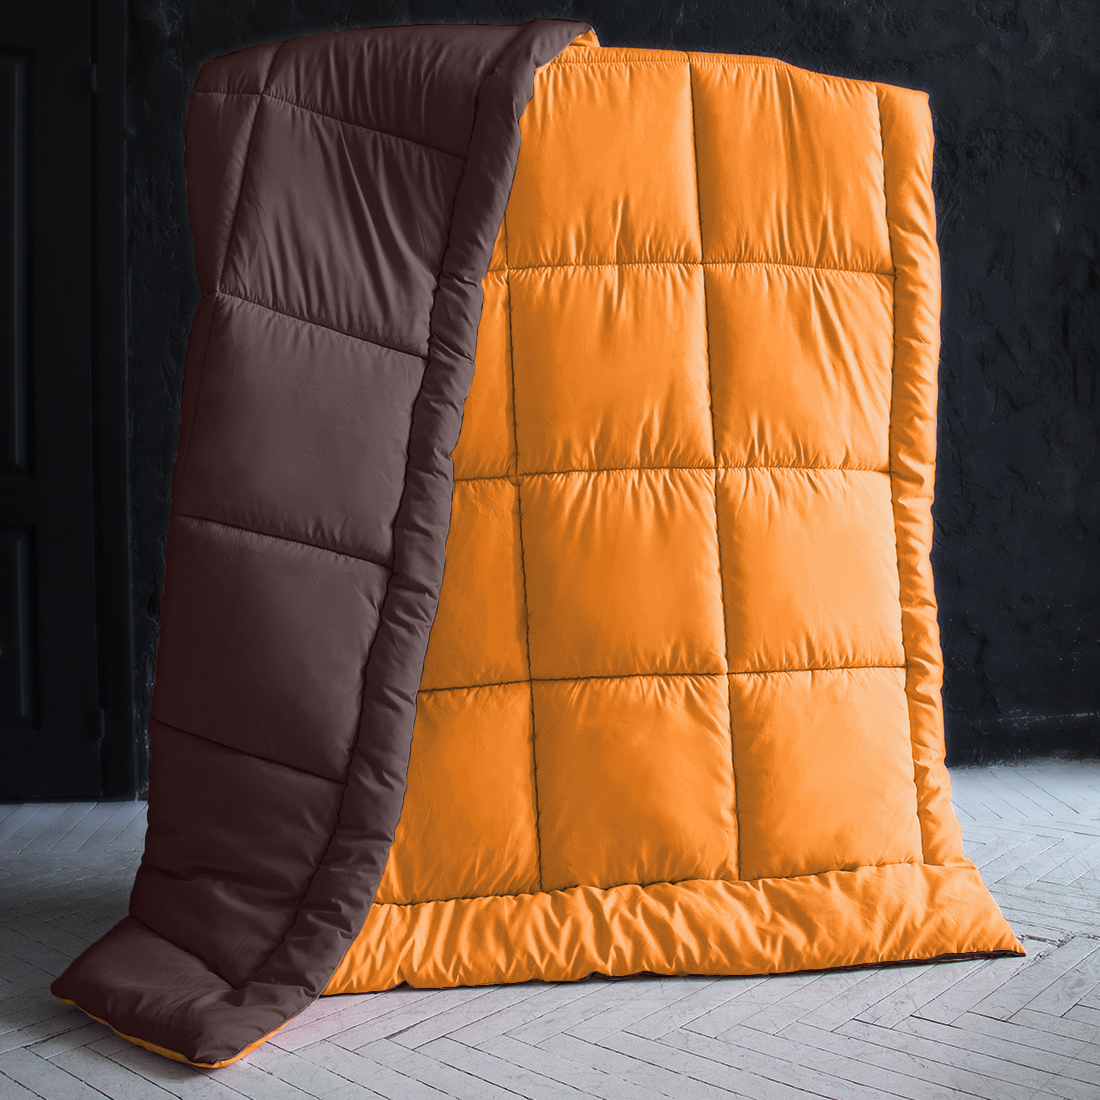 Одеяло MultiColor Цвет: Оранжевый/Темно-Коричневый (155х215 см), размер 155х215 см pva319976 Одеяло MultiColor Цвет: Оранжевый/Темно-Коричневый (155х215 см) - фото 1